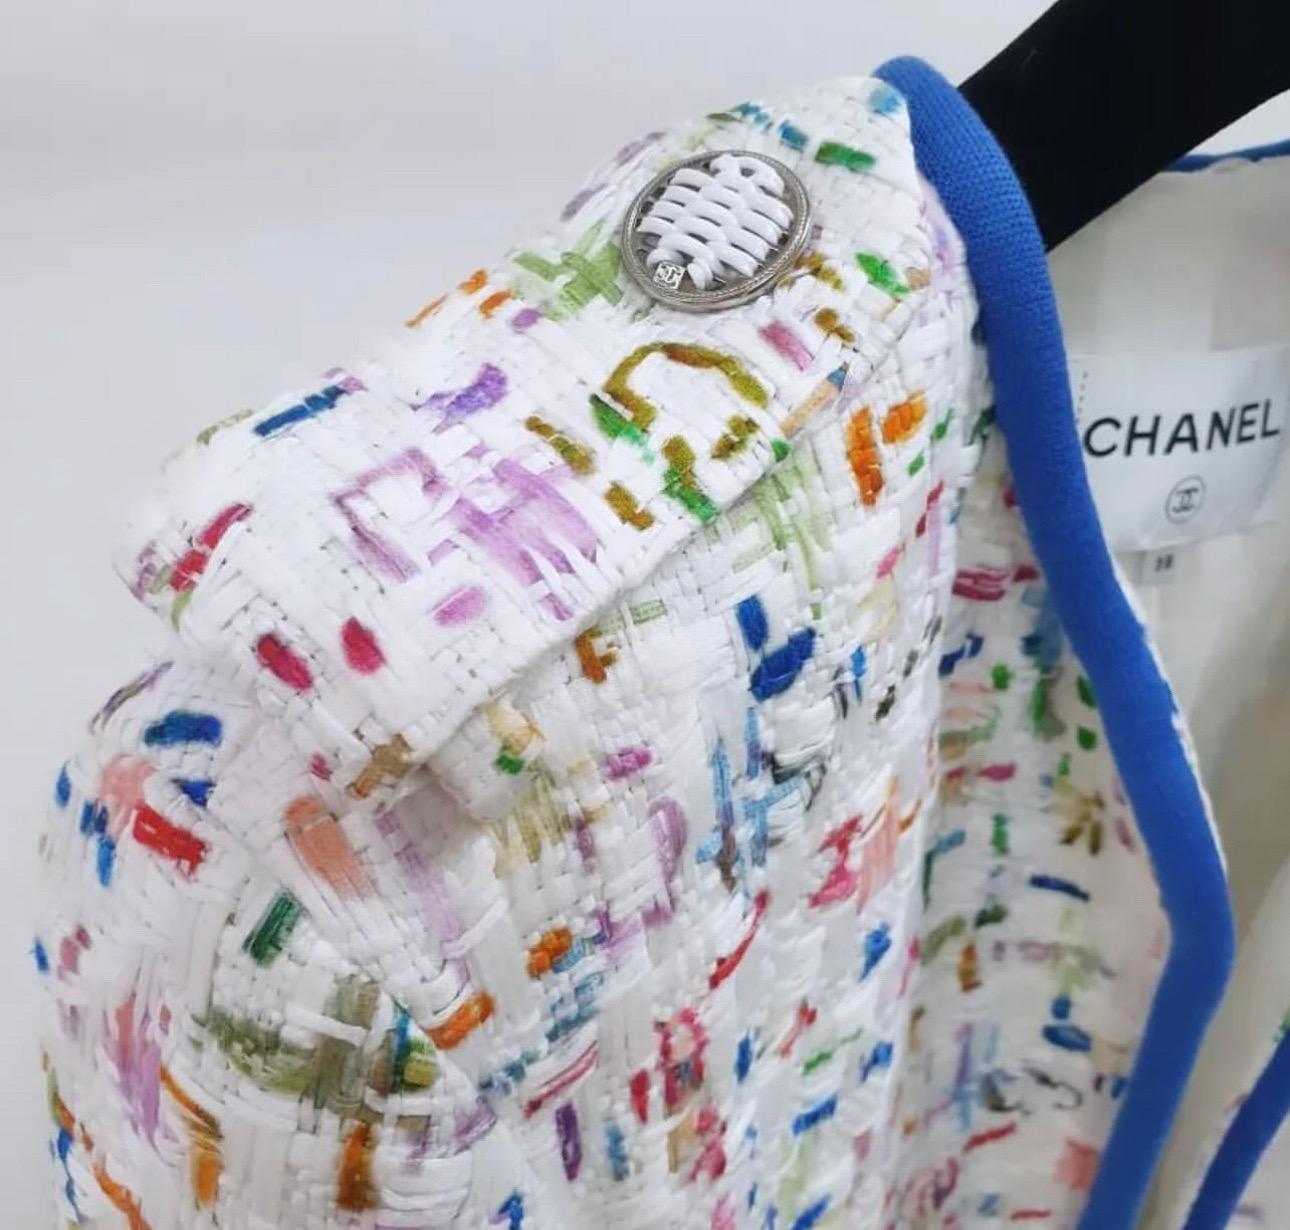 Fabelhafte Chanel Frühjahr 2017 Collection weiß, blau & multicolor Tweed Jacke
Sz.38
Vollständig gefüttert mit weißem CC-Logo-Futter
Ausgezeichneter gebrauchter Zustand, nur leichte Abnutzung